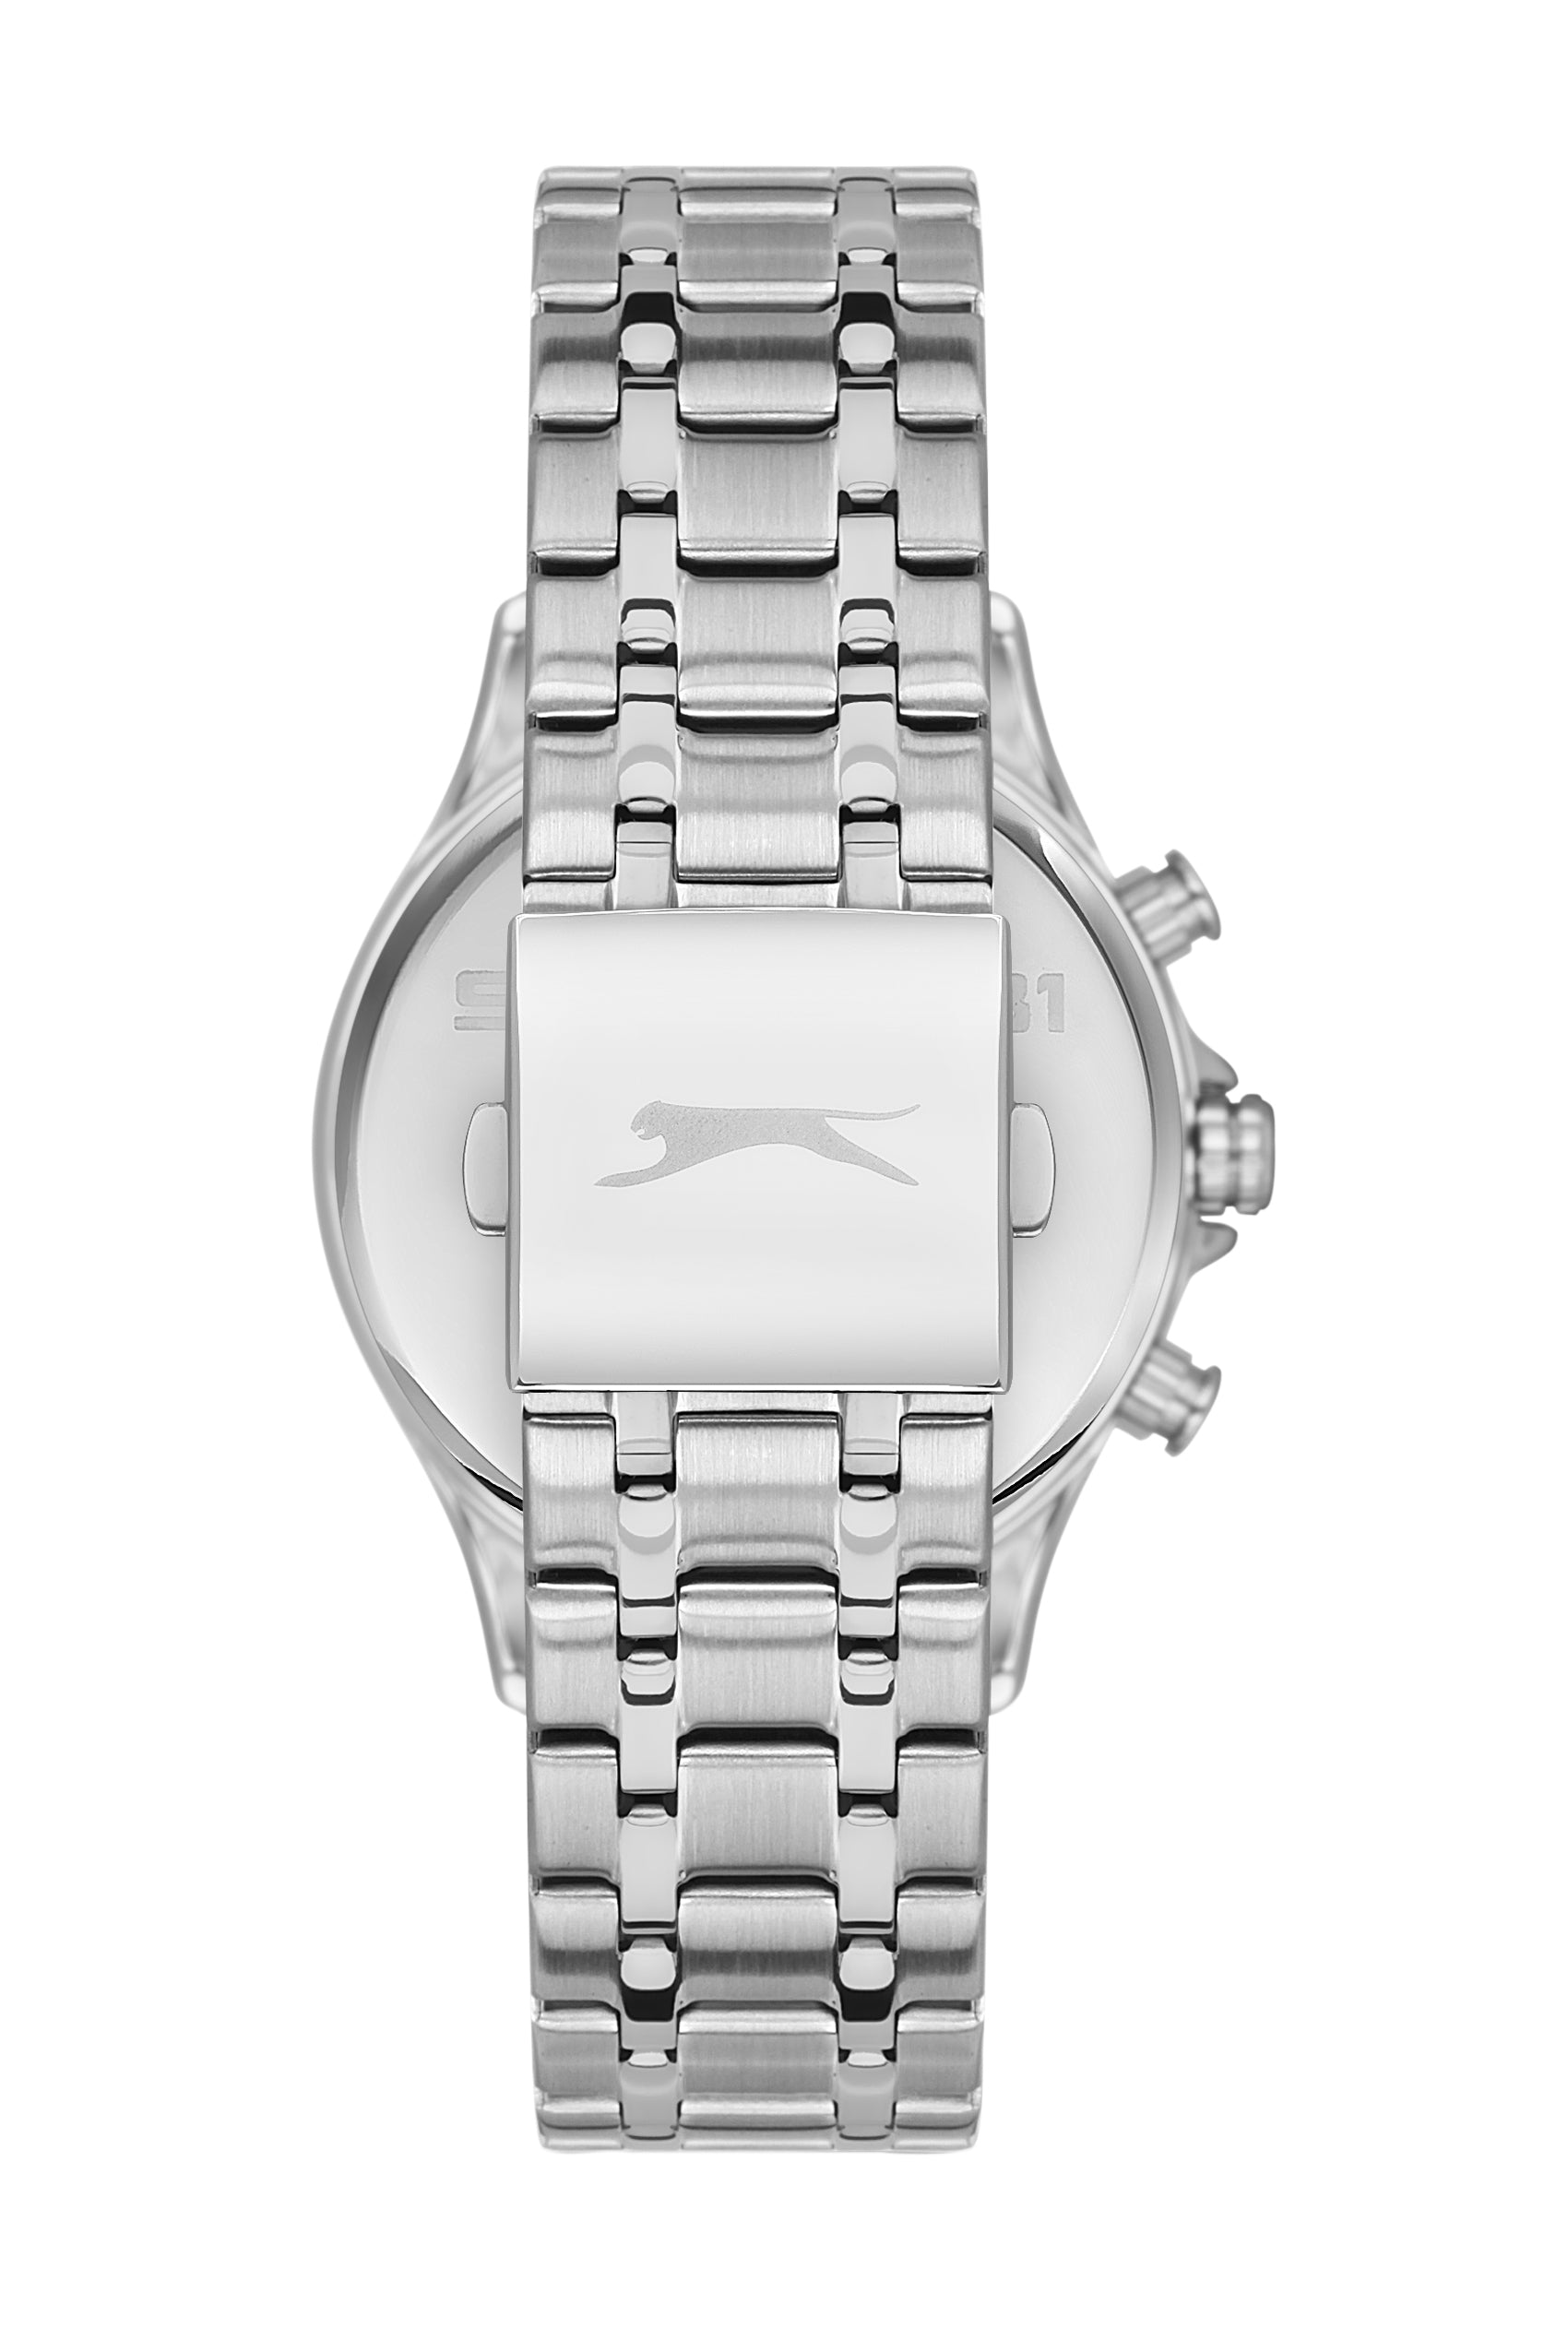 Slazenger - SL.9.6518.2.04 - Stainless Steel Watch For Men